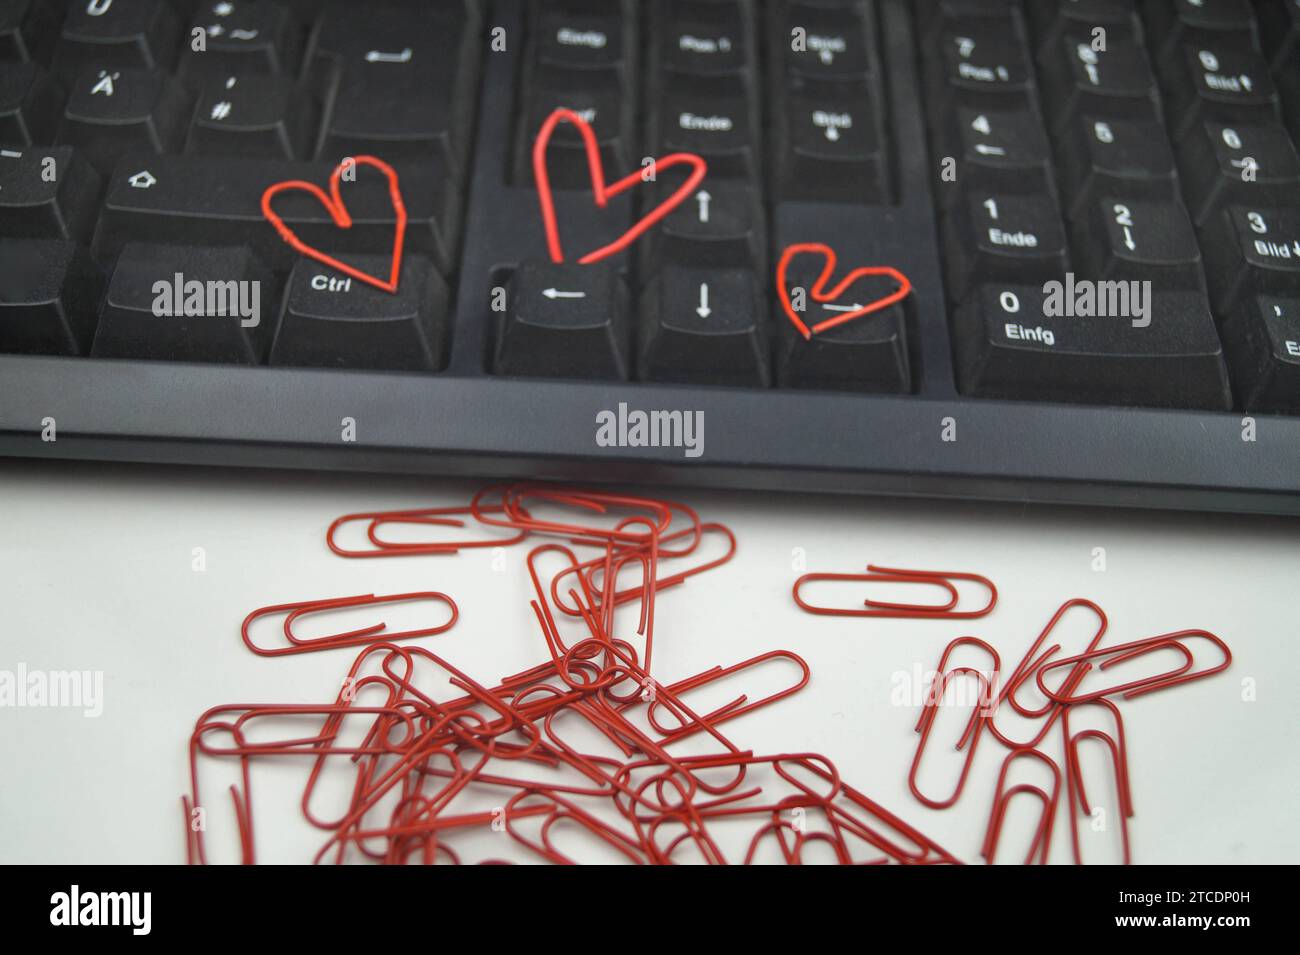 clavier avec trombones rouges, trois d'entre eux en forme de coeur, amour dans le bureau Banque D'Images